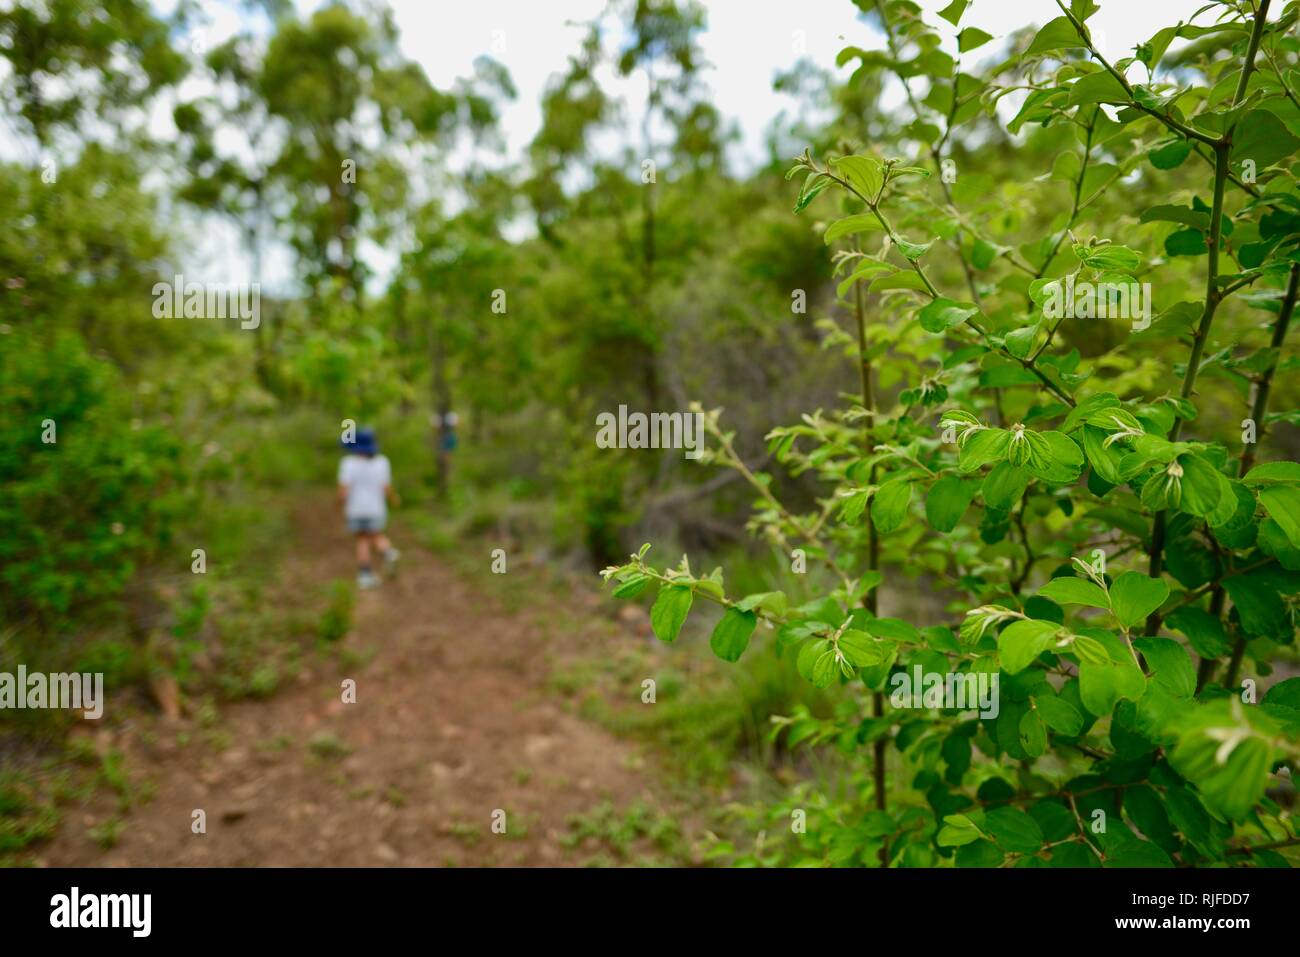 Ziziphus mauritiana data cinese ber Chinee apple indiano jujube prugna Regi pandu jujube indiano schiacciate masau, Moongun sentiero a piedi a molle di Elliot Foto Stock